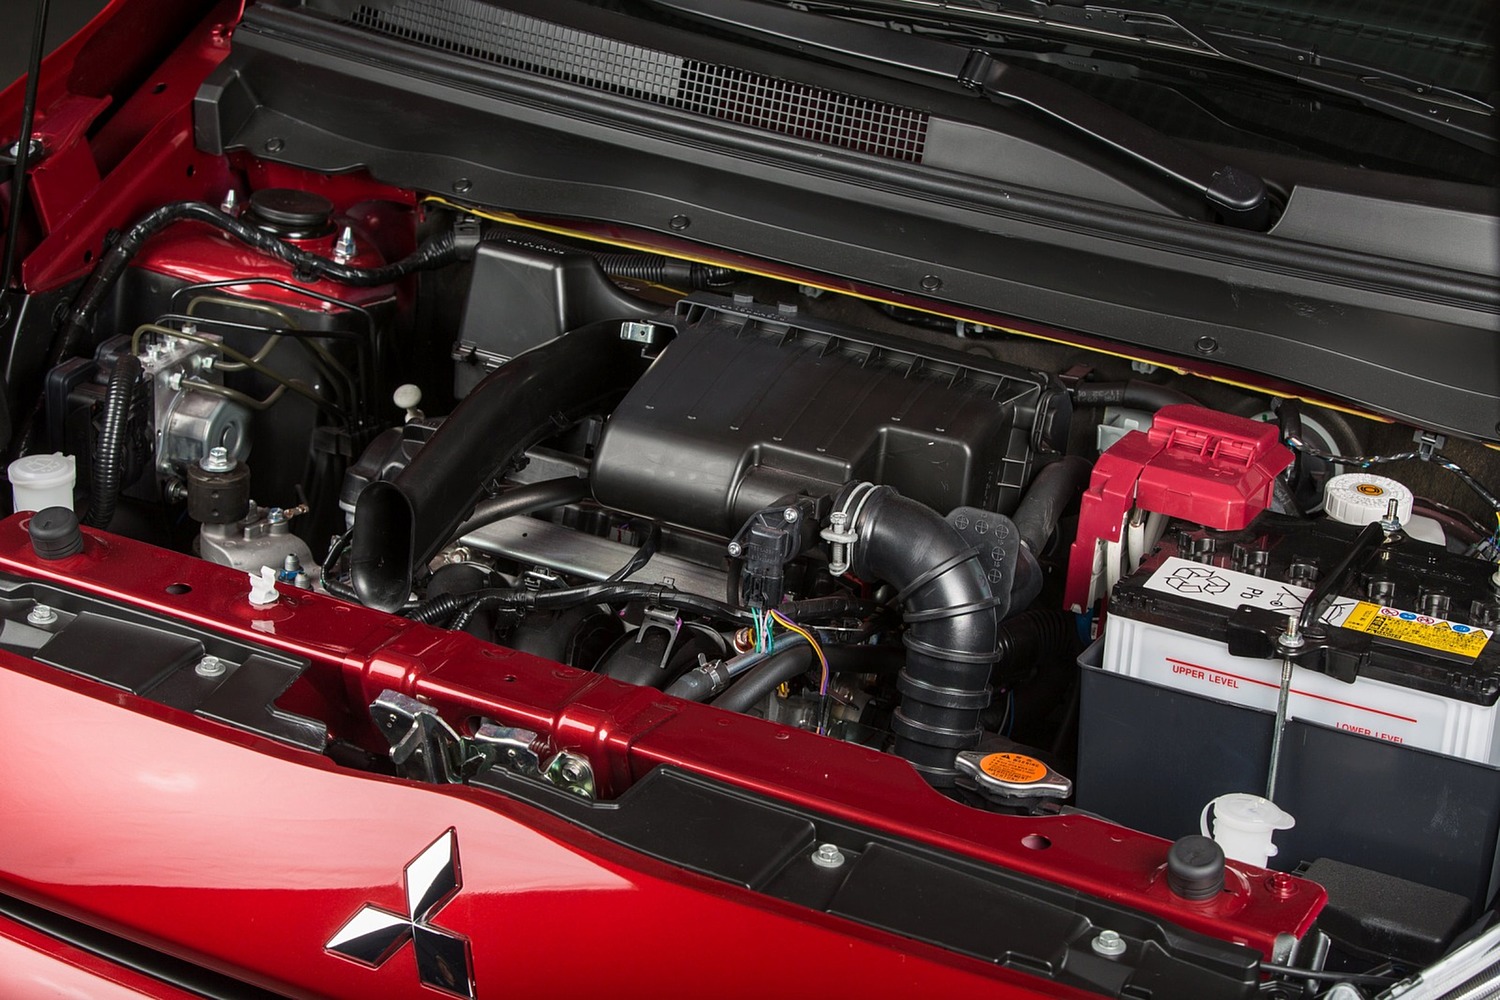 Mitsubishi Mirage ES 4dr Hatchback 1.2L I3 Engine (2014 model year shown)